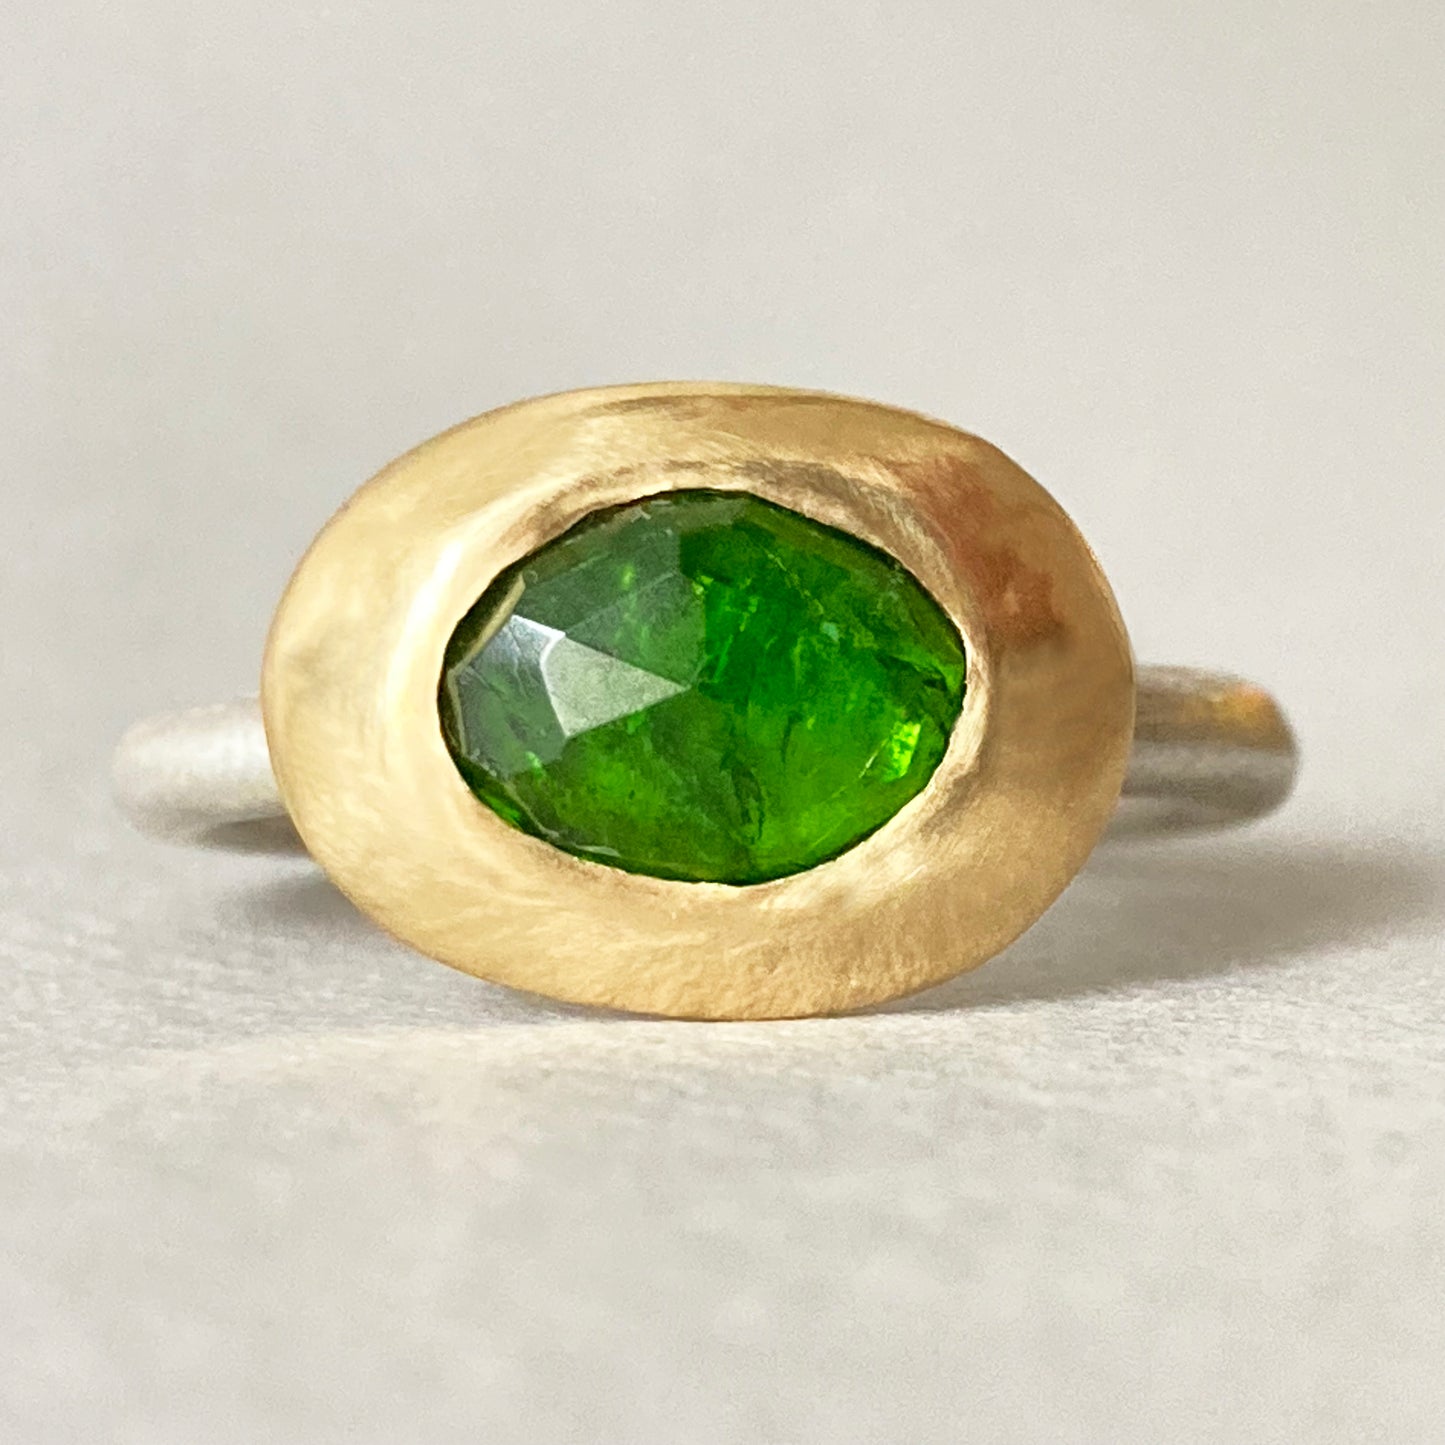 Green Tourmaline Ring 5.75 US